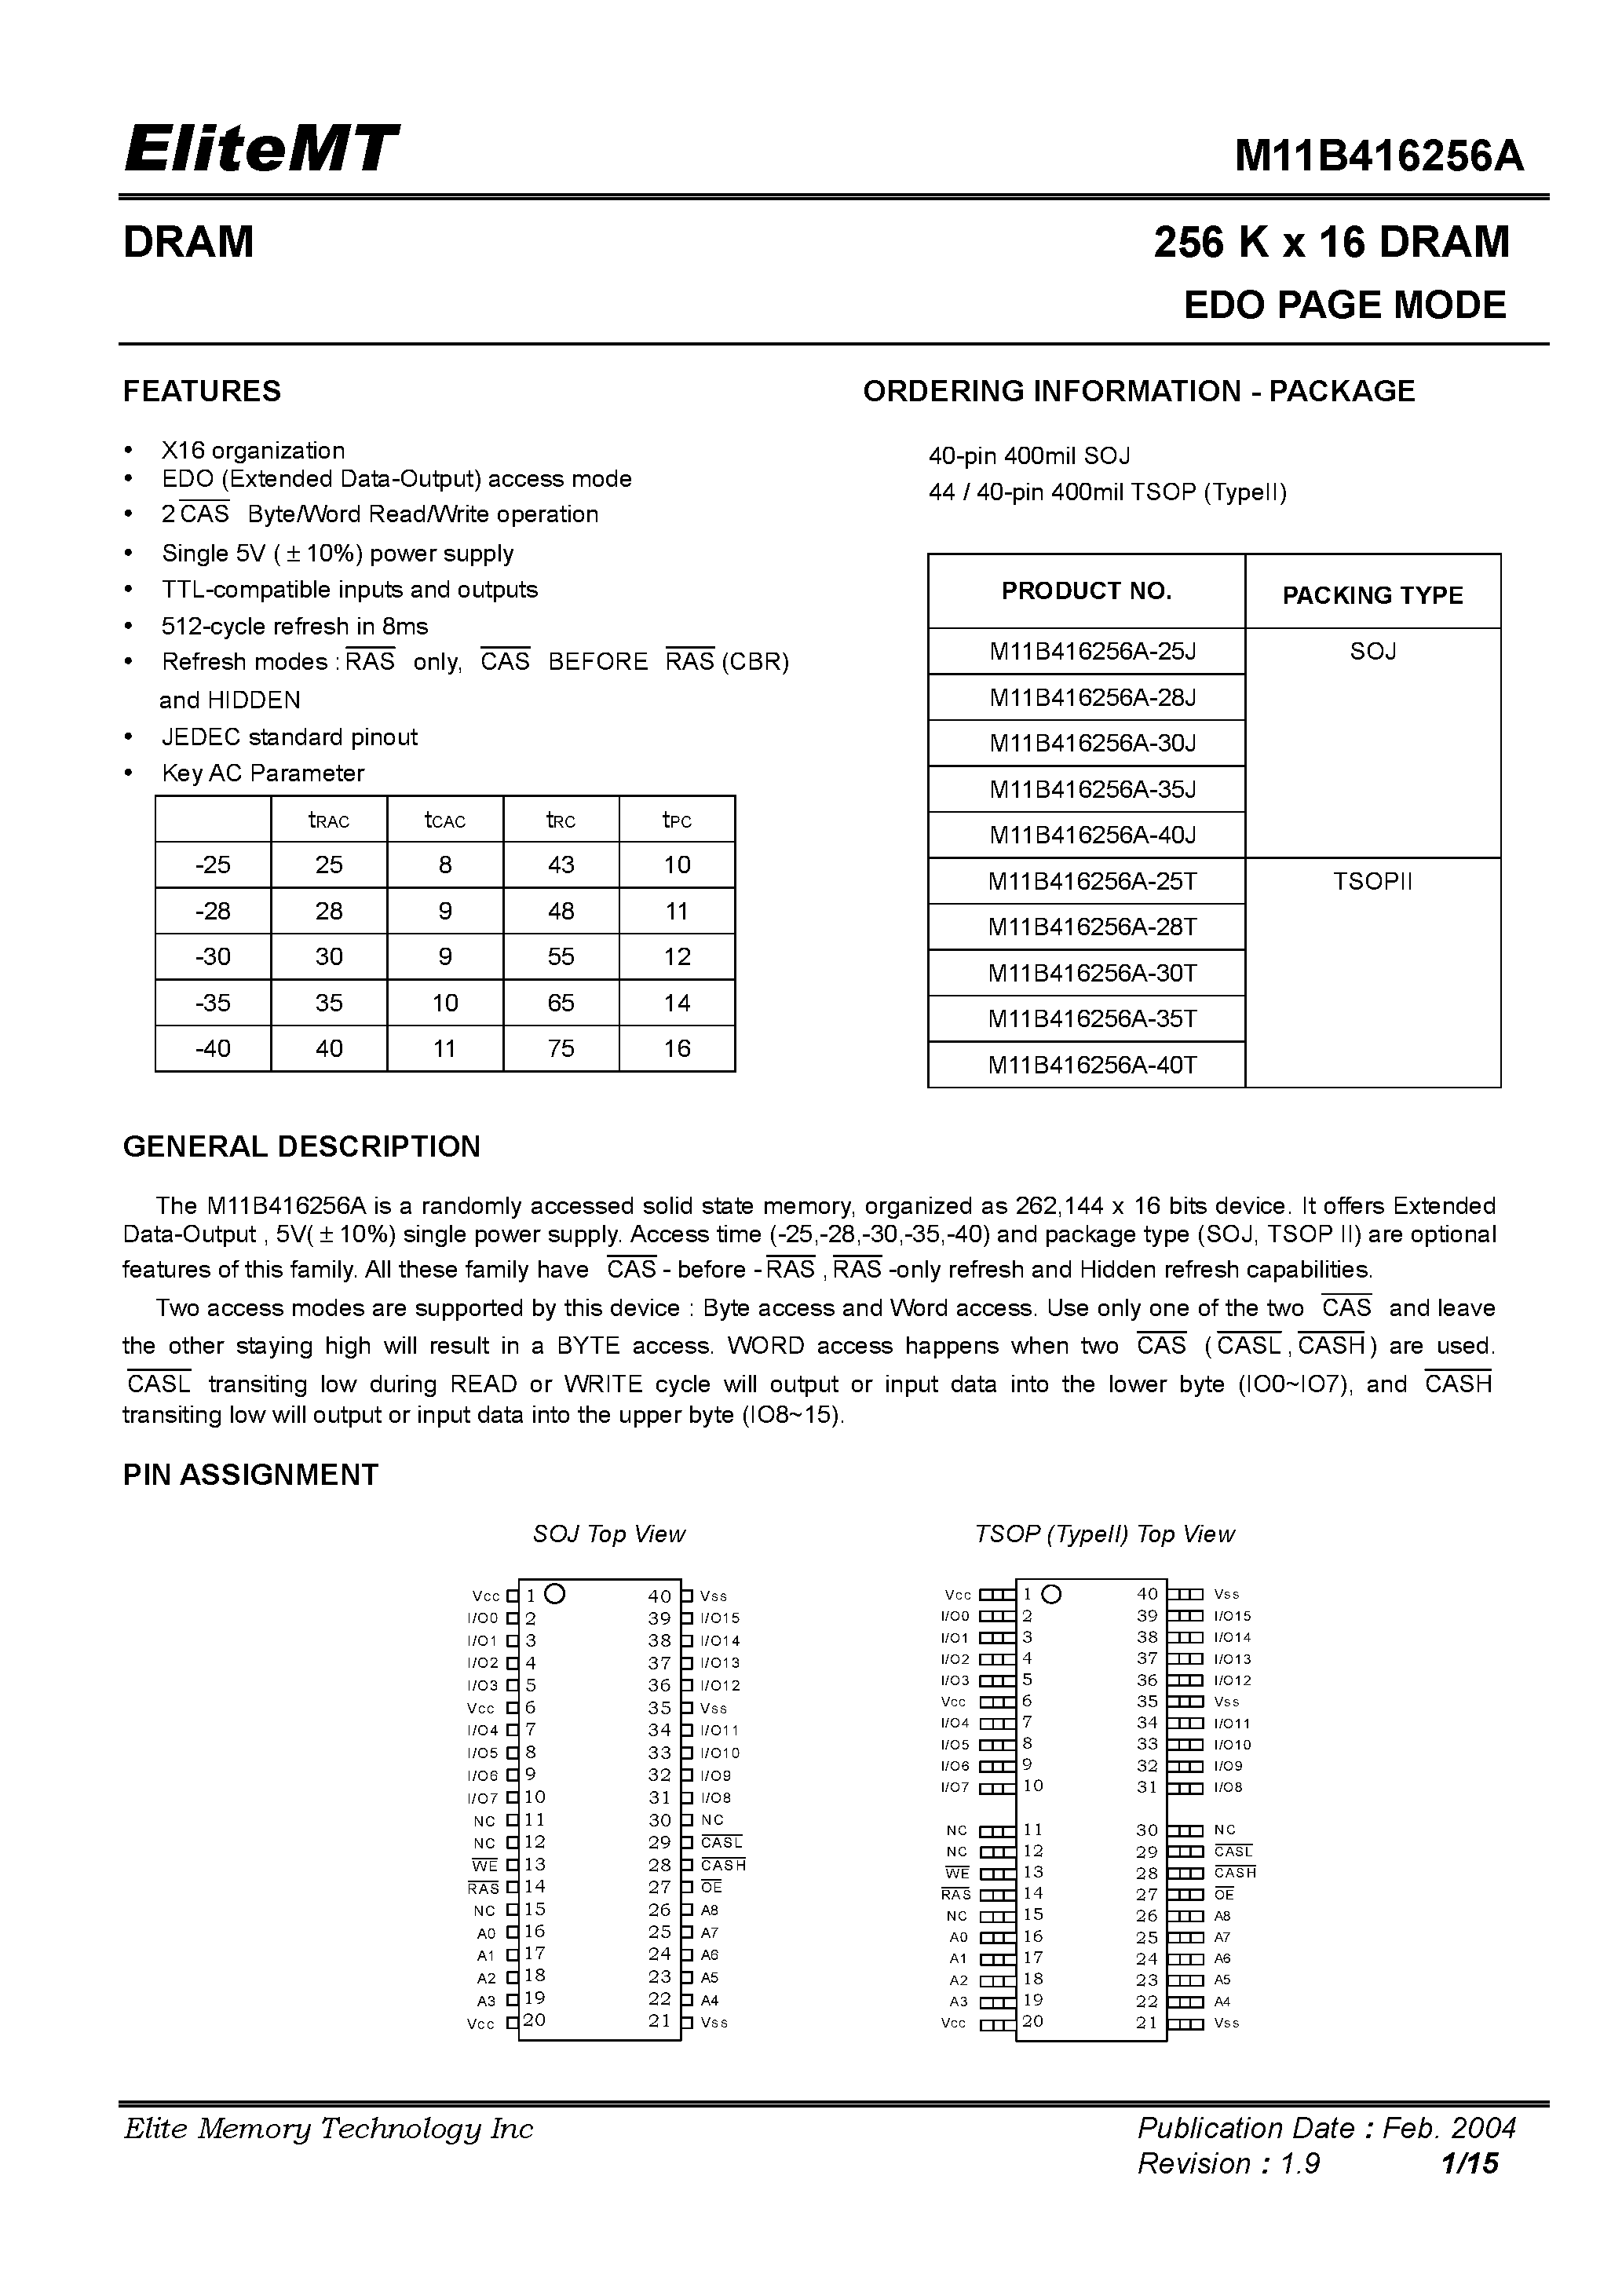 Datasheet M11B416256A-30T - 256 K x 16 DRAM EDO PAGE MODE page 1